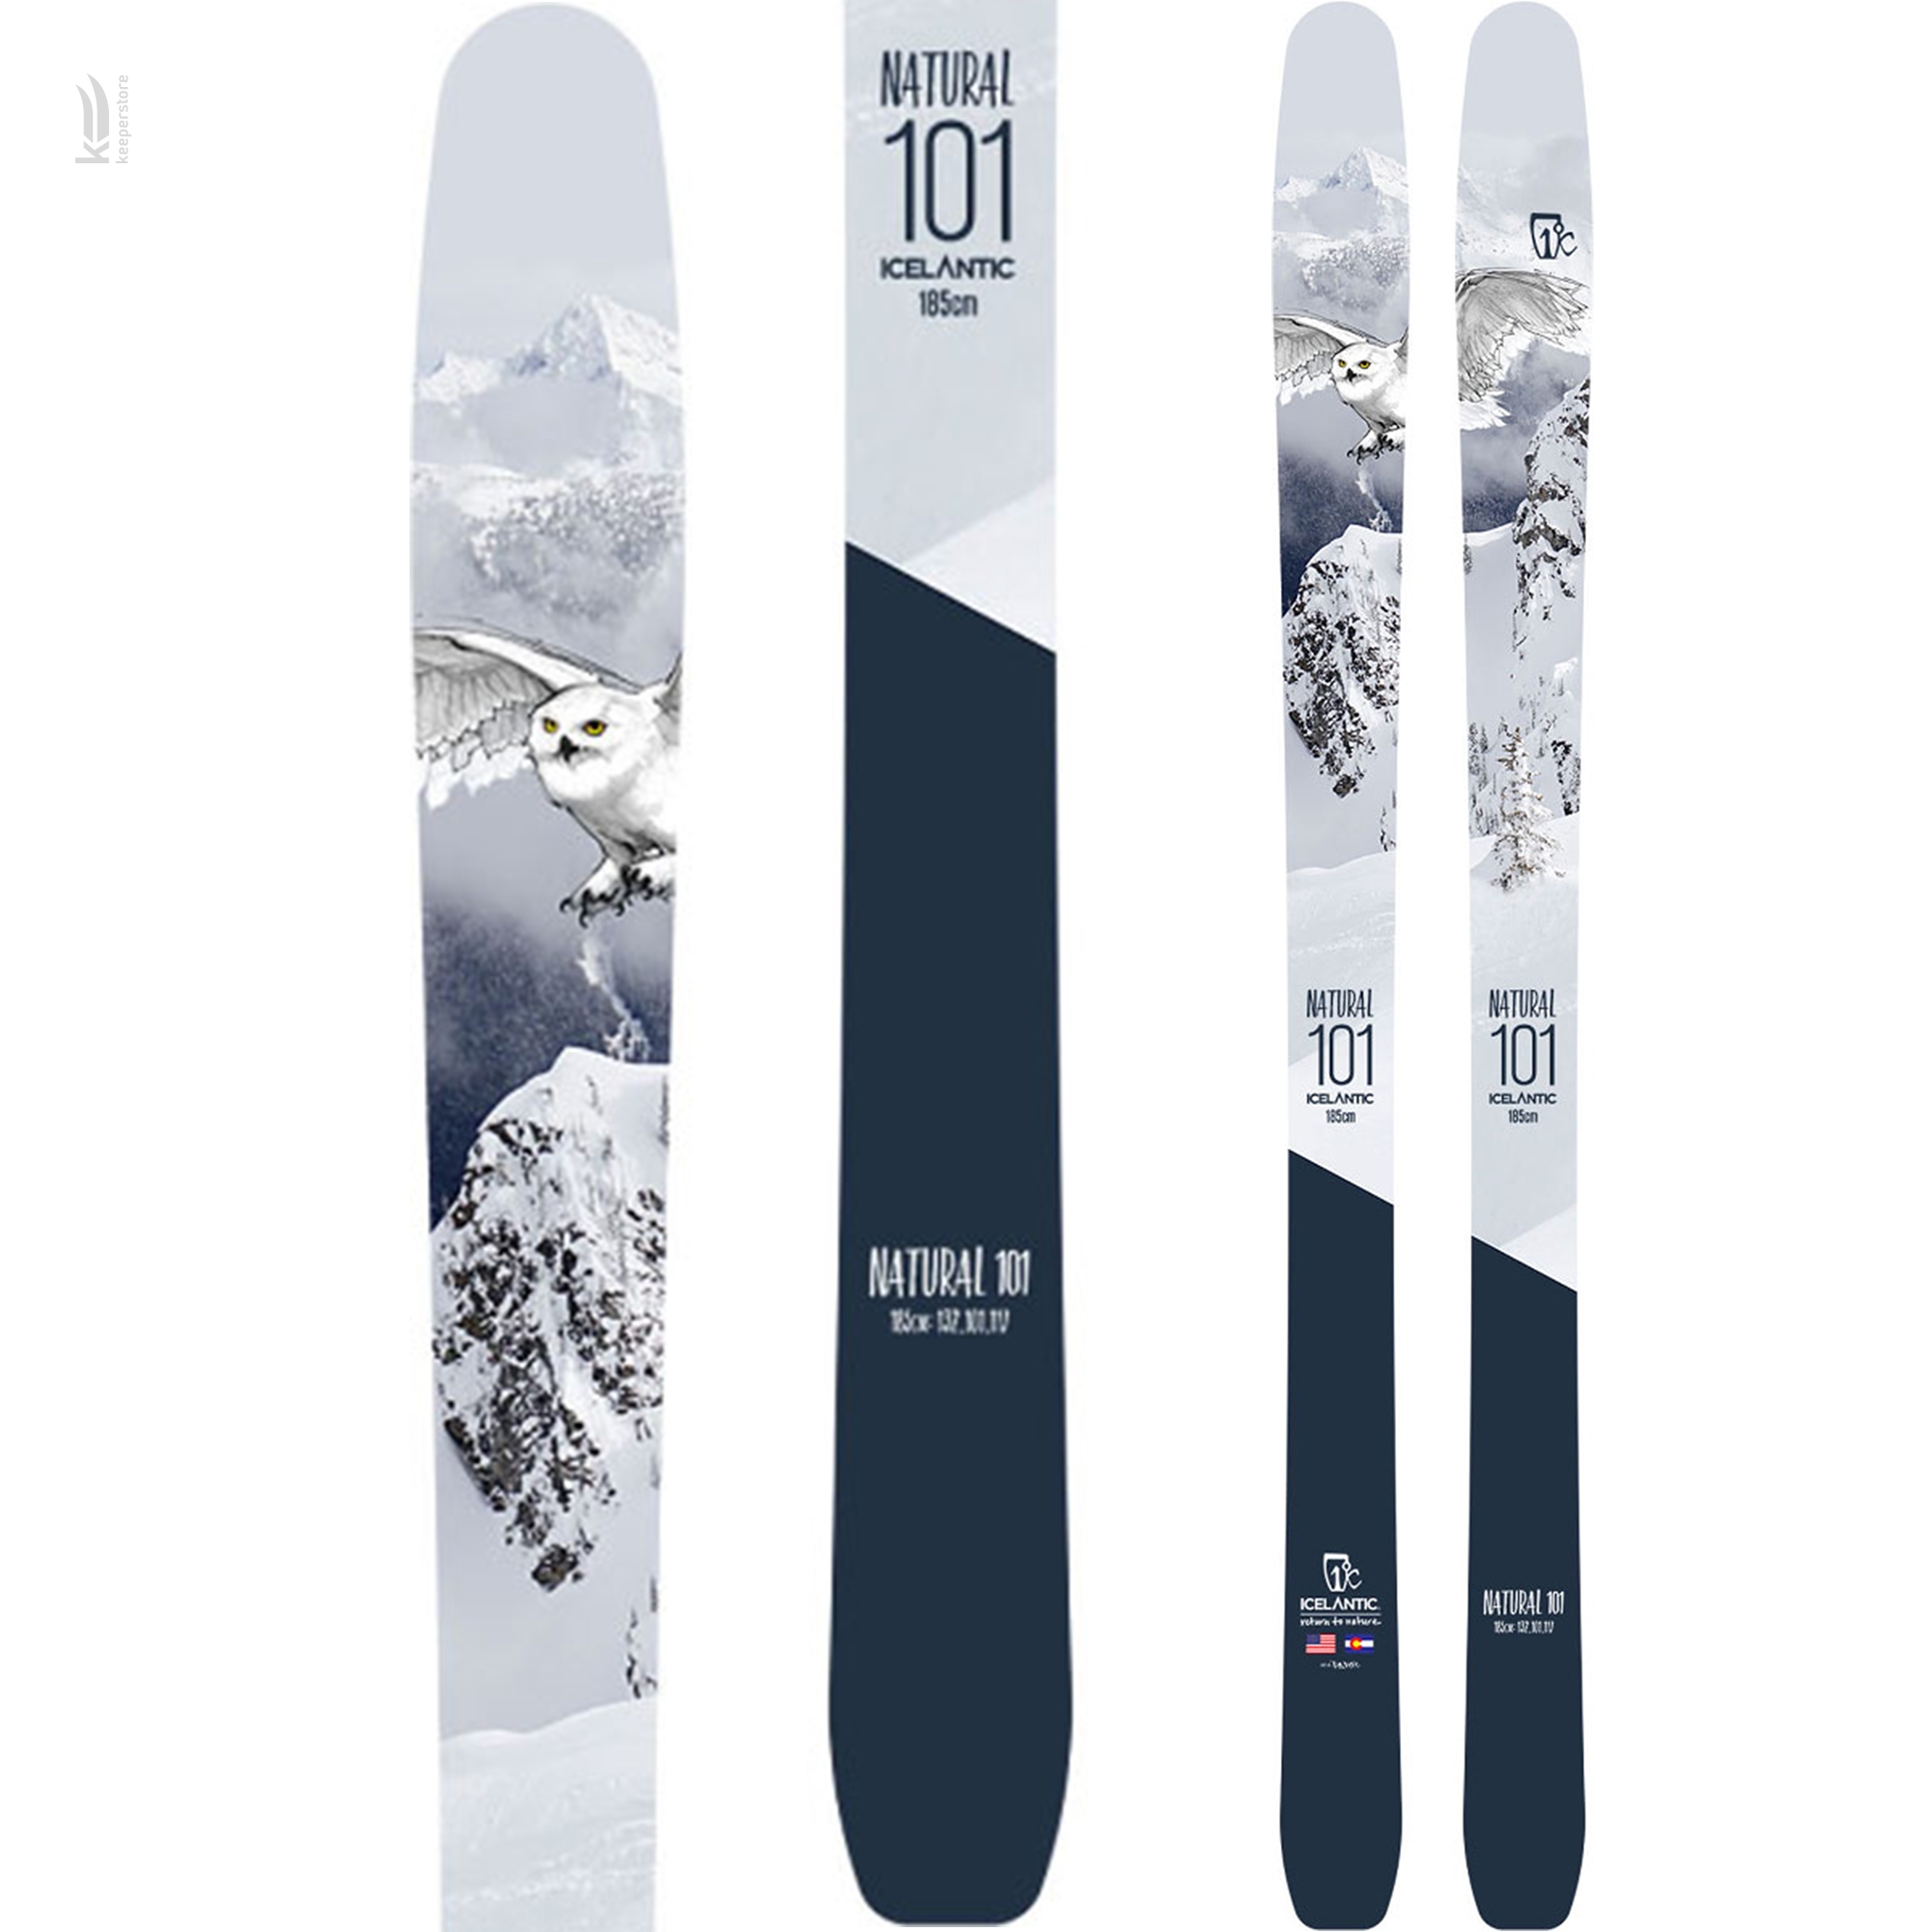 Лыжи для скитура Icelantic Natural 101 2018/2019 185cm